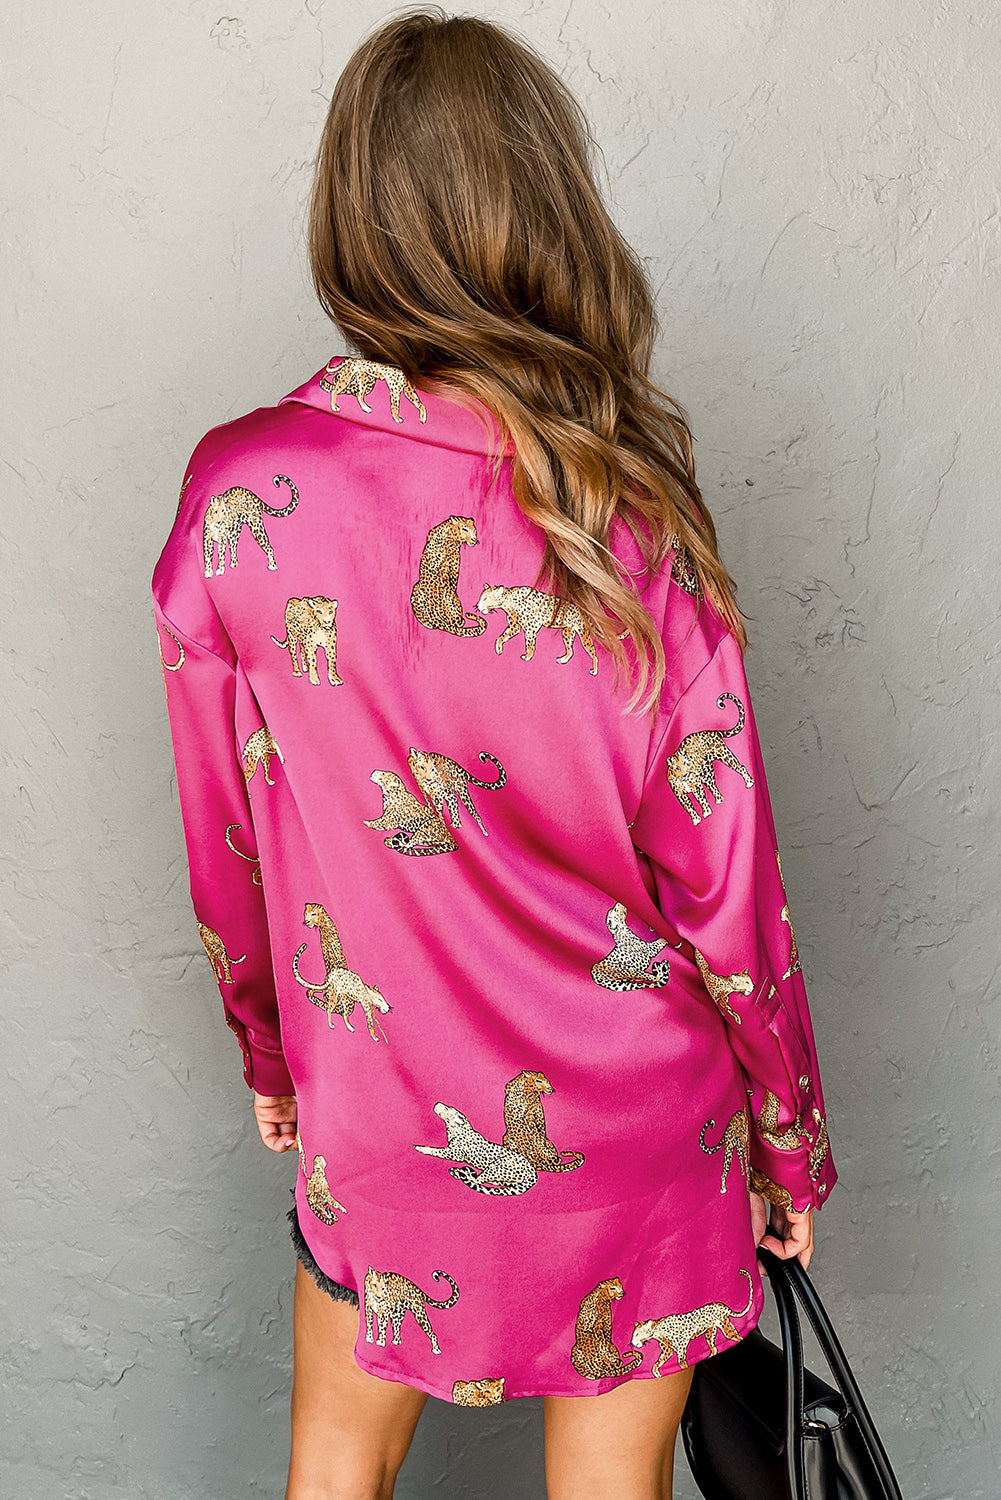 Rose Cheetah Animal Print Button Up Satin Shirt (2 Colors)